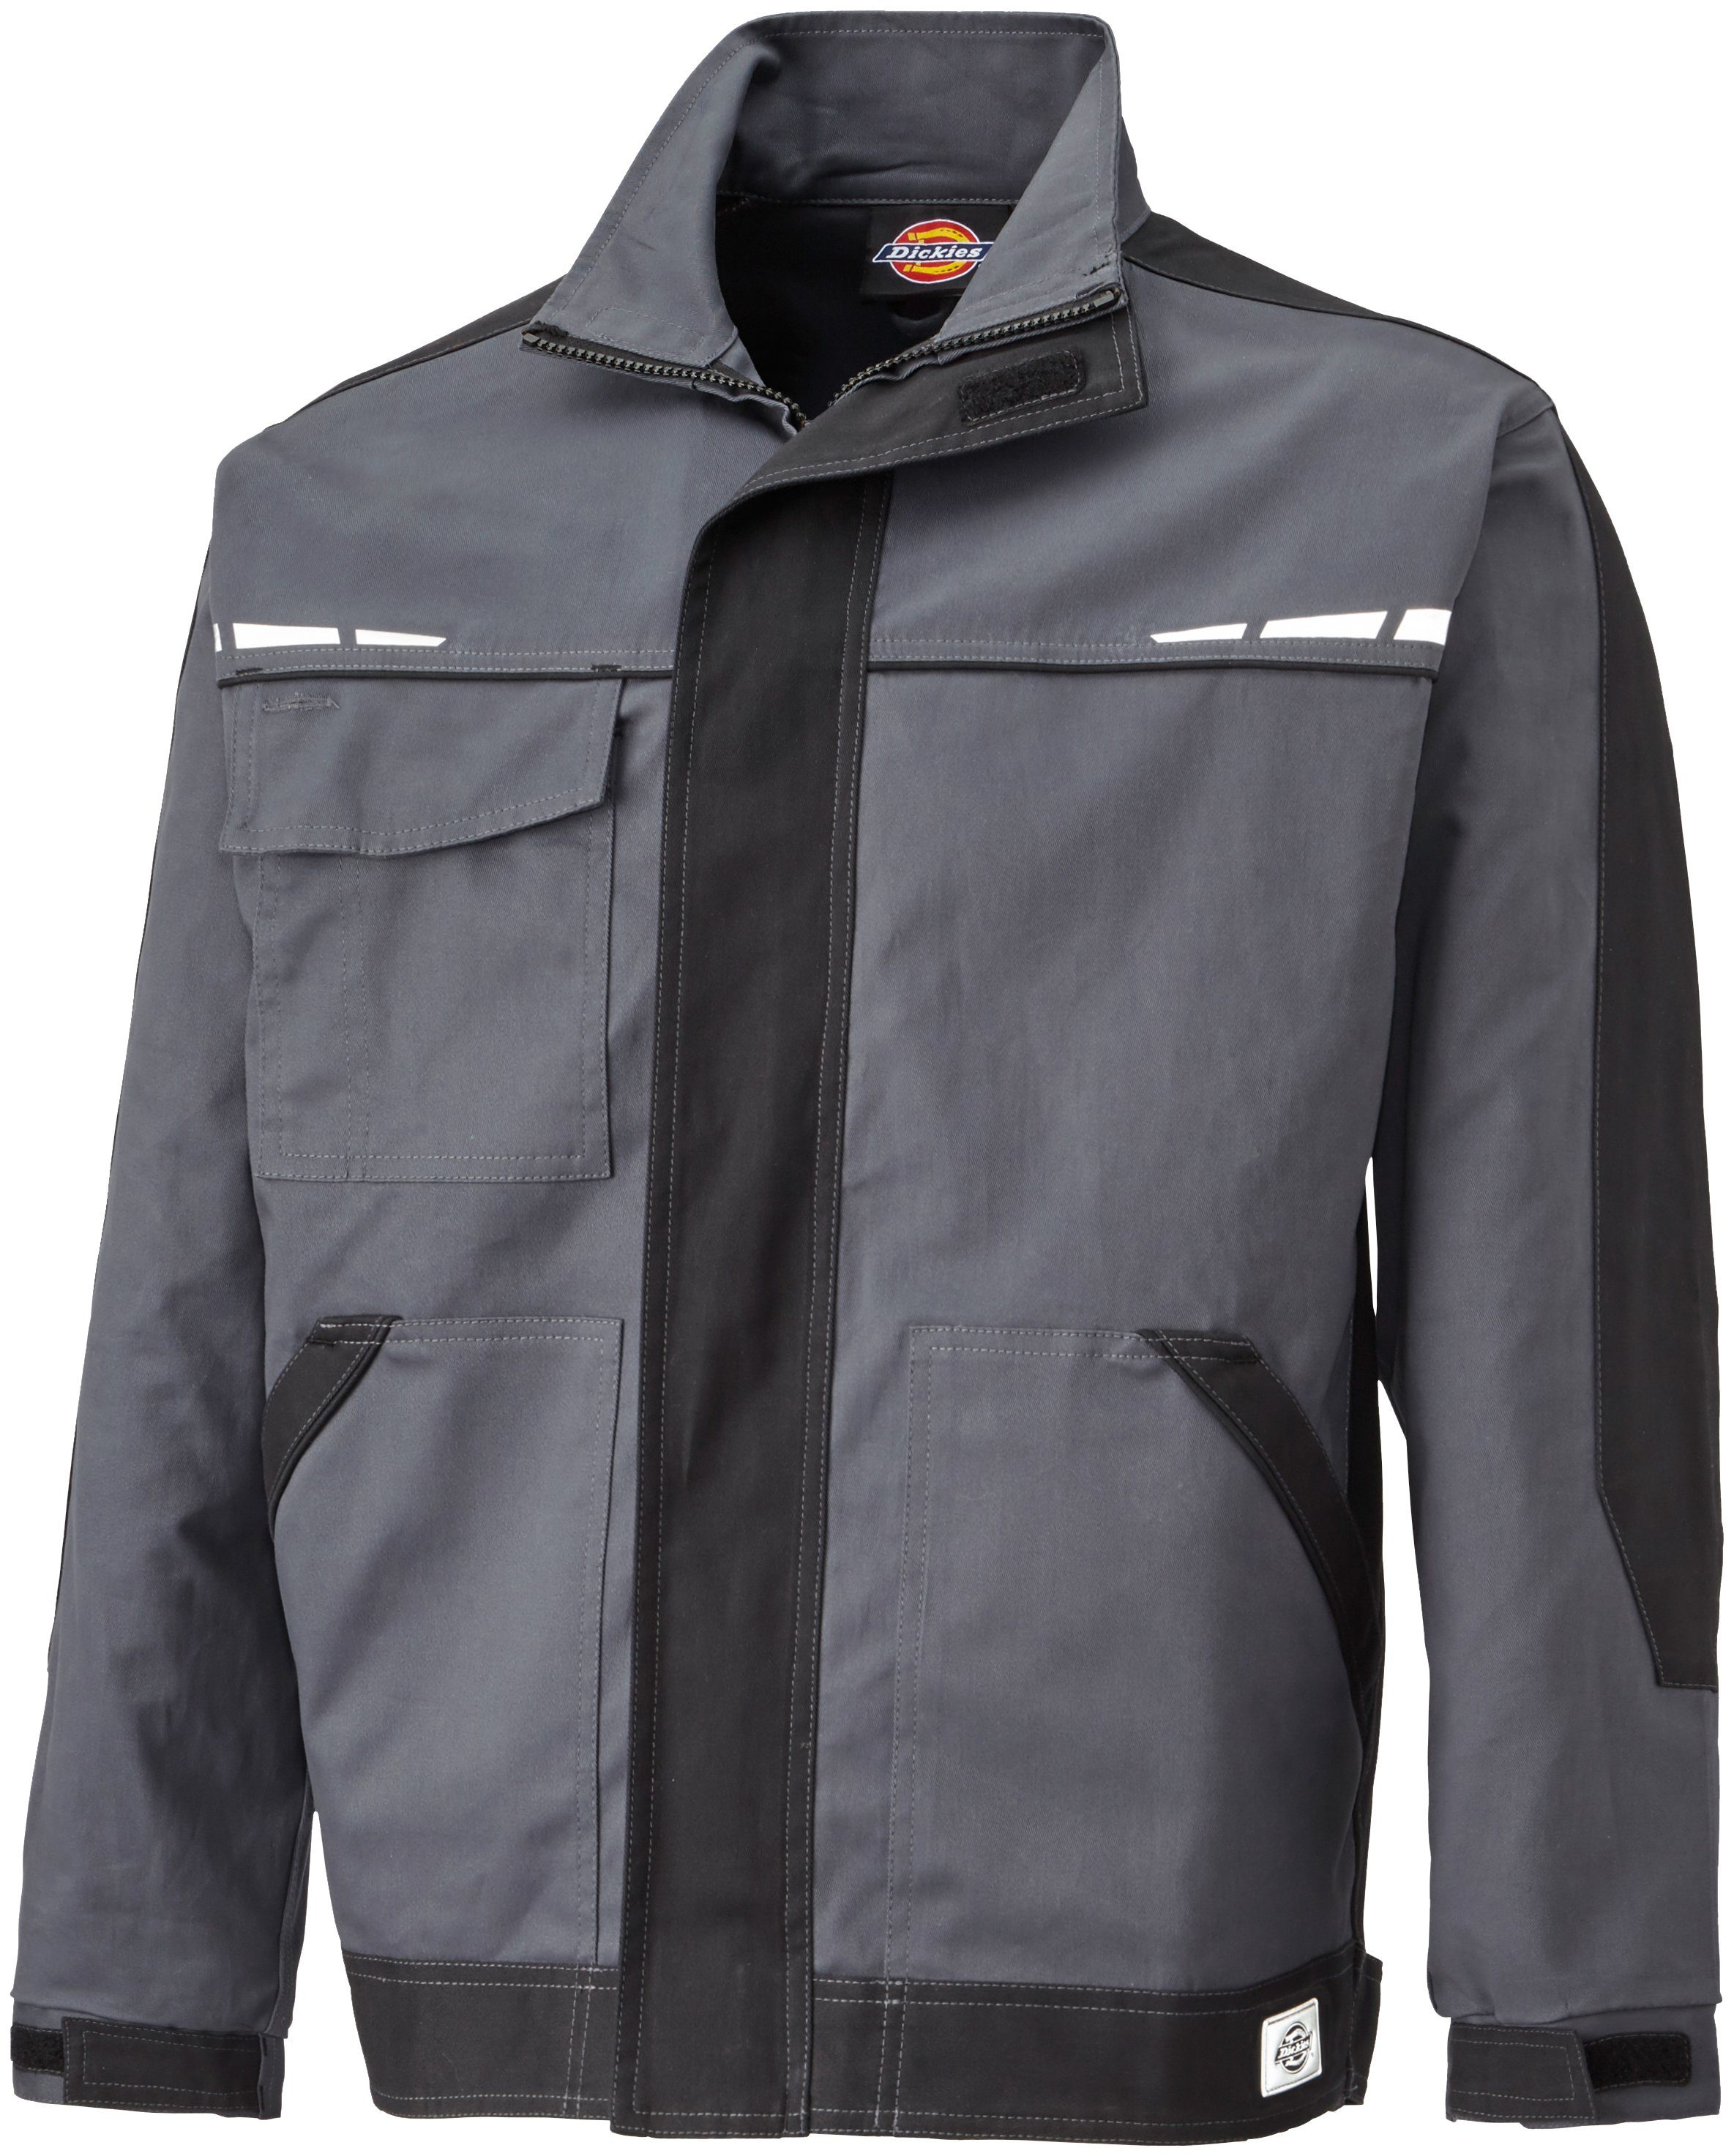 GDT Designelemente Arbeitsjacke grau-schwarz Reflektierende Premium Dickies